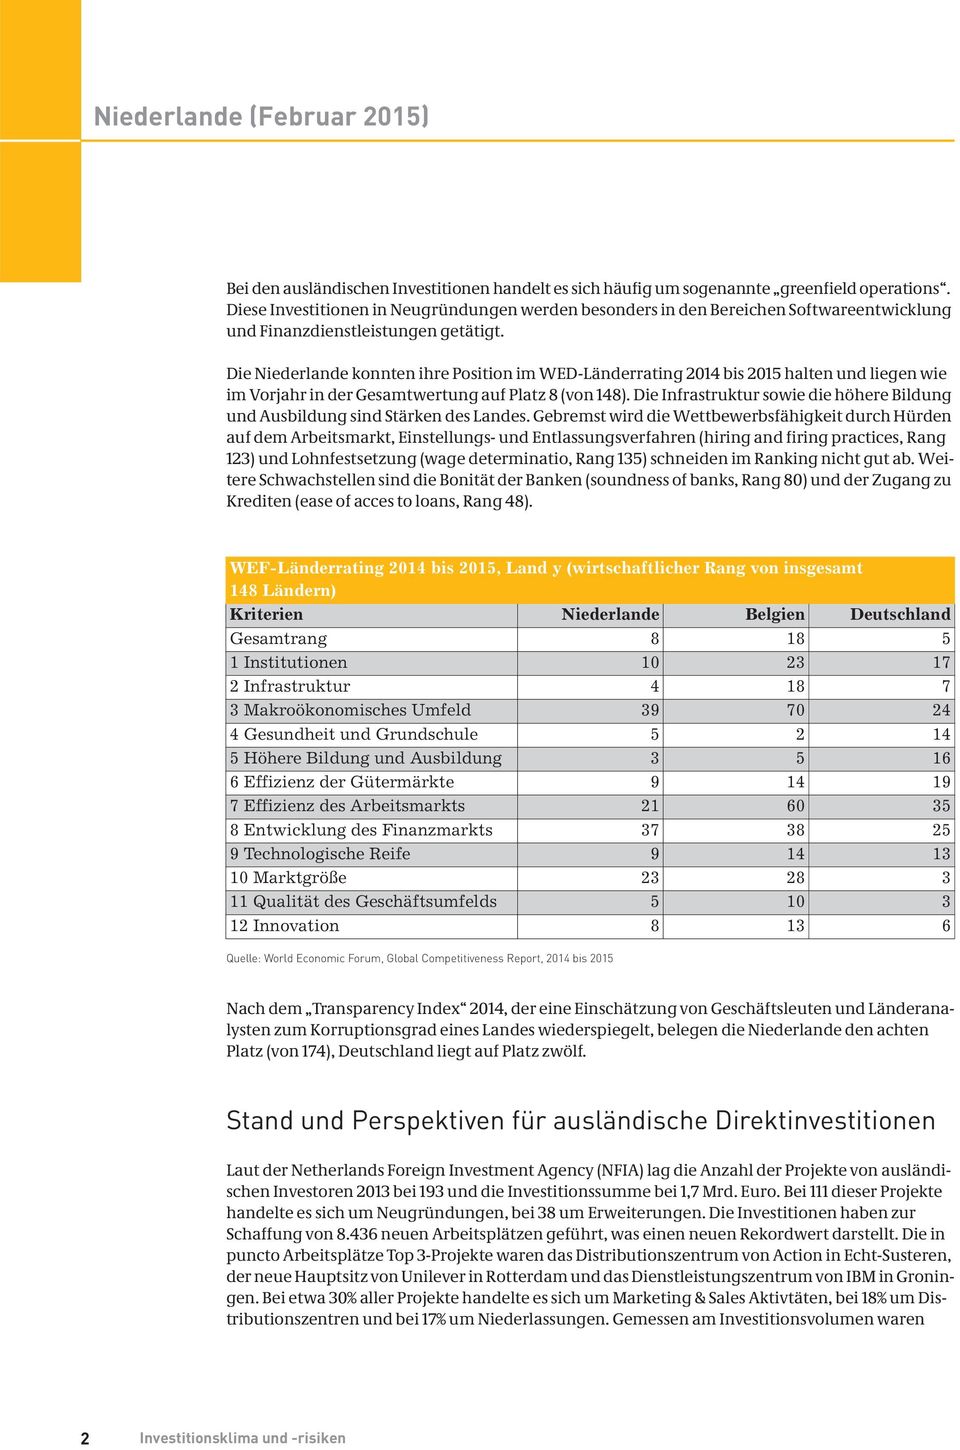 Die Niederlande konnten ihre Position im WED-Länderrating 2014 bis 2015 halten und liegen wie im Vorjahr in der Gesamtwertung auf Platz 8 (von 148).